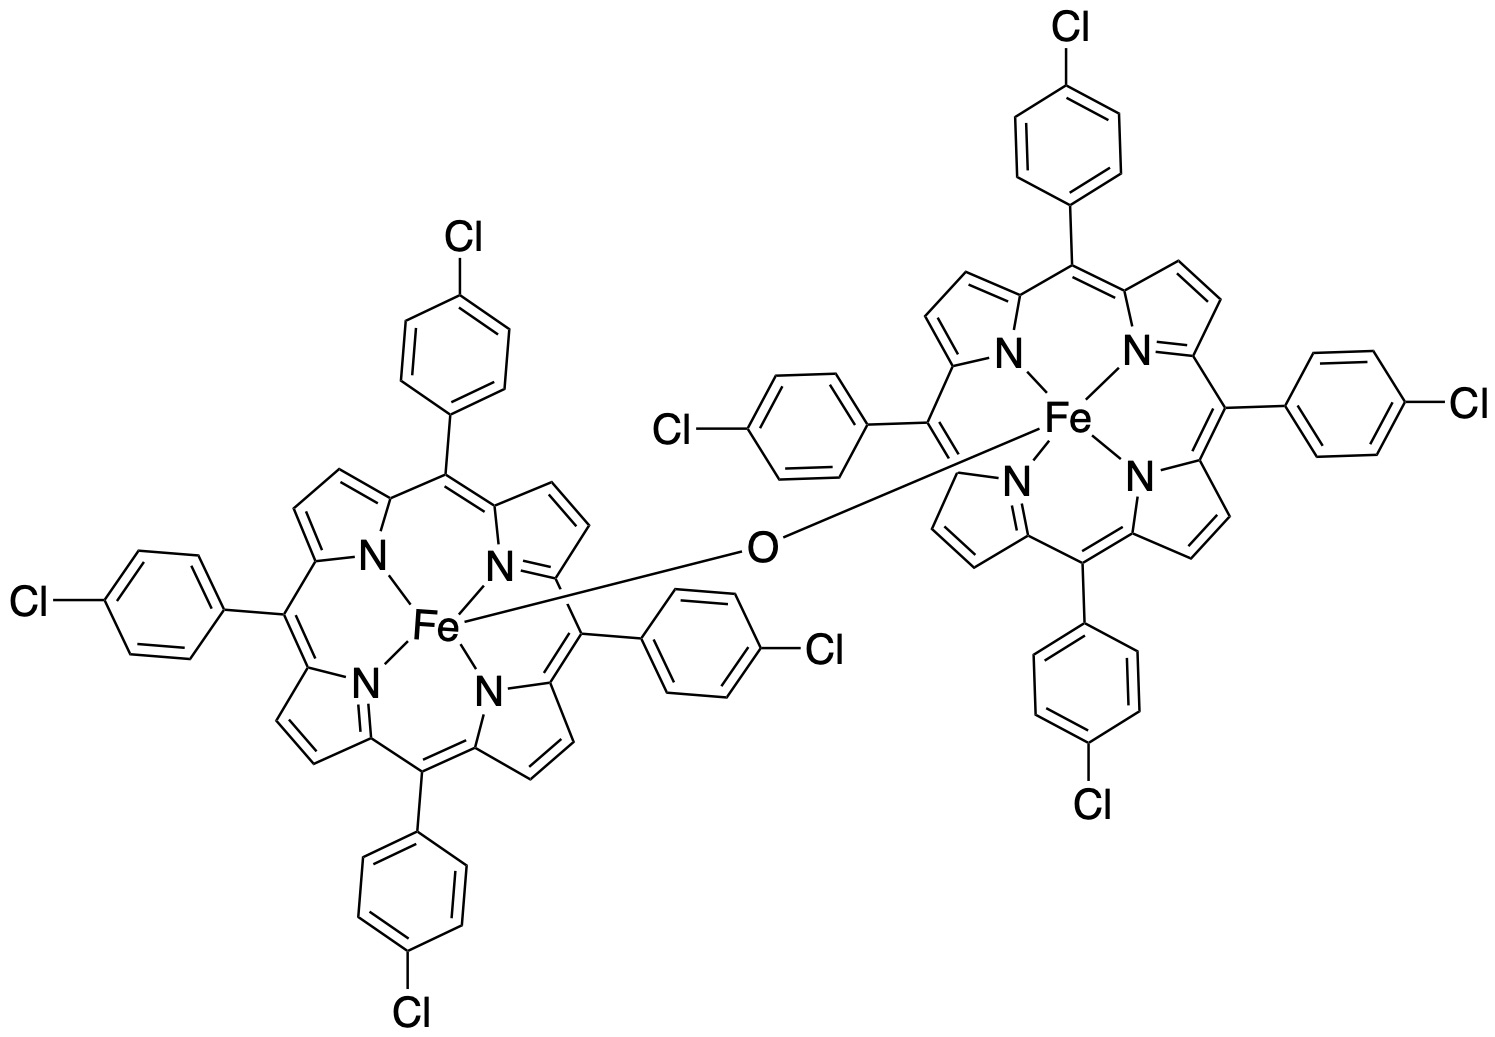 μ-氧-双铁四对甲苯基卟啉,Iron(III) meso-tetrakis(4-methylphenyl)porphine-μ-oxo dimer